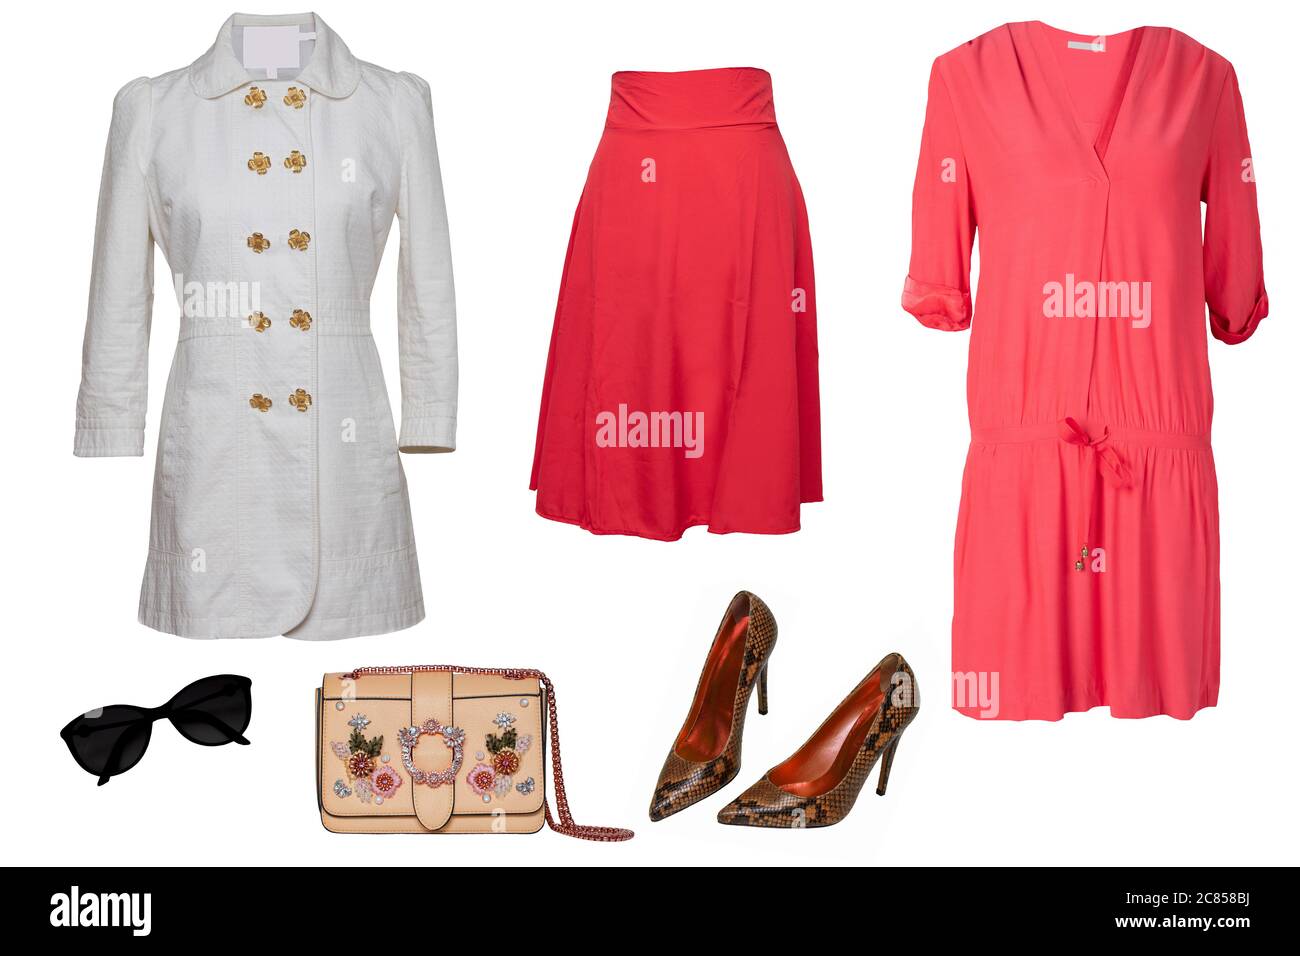 Ropa de mujer collage. Conjunto de un elegante y moderno abrigo femenino,  vestido rojo noche, elegante falda de verano roja, bolso, zapatos y otros  accesorios Fotografía de stock - Alamy